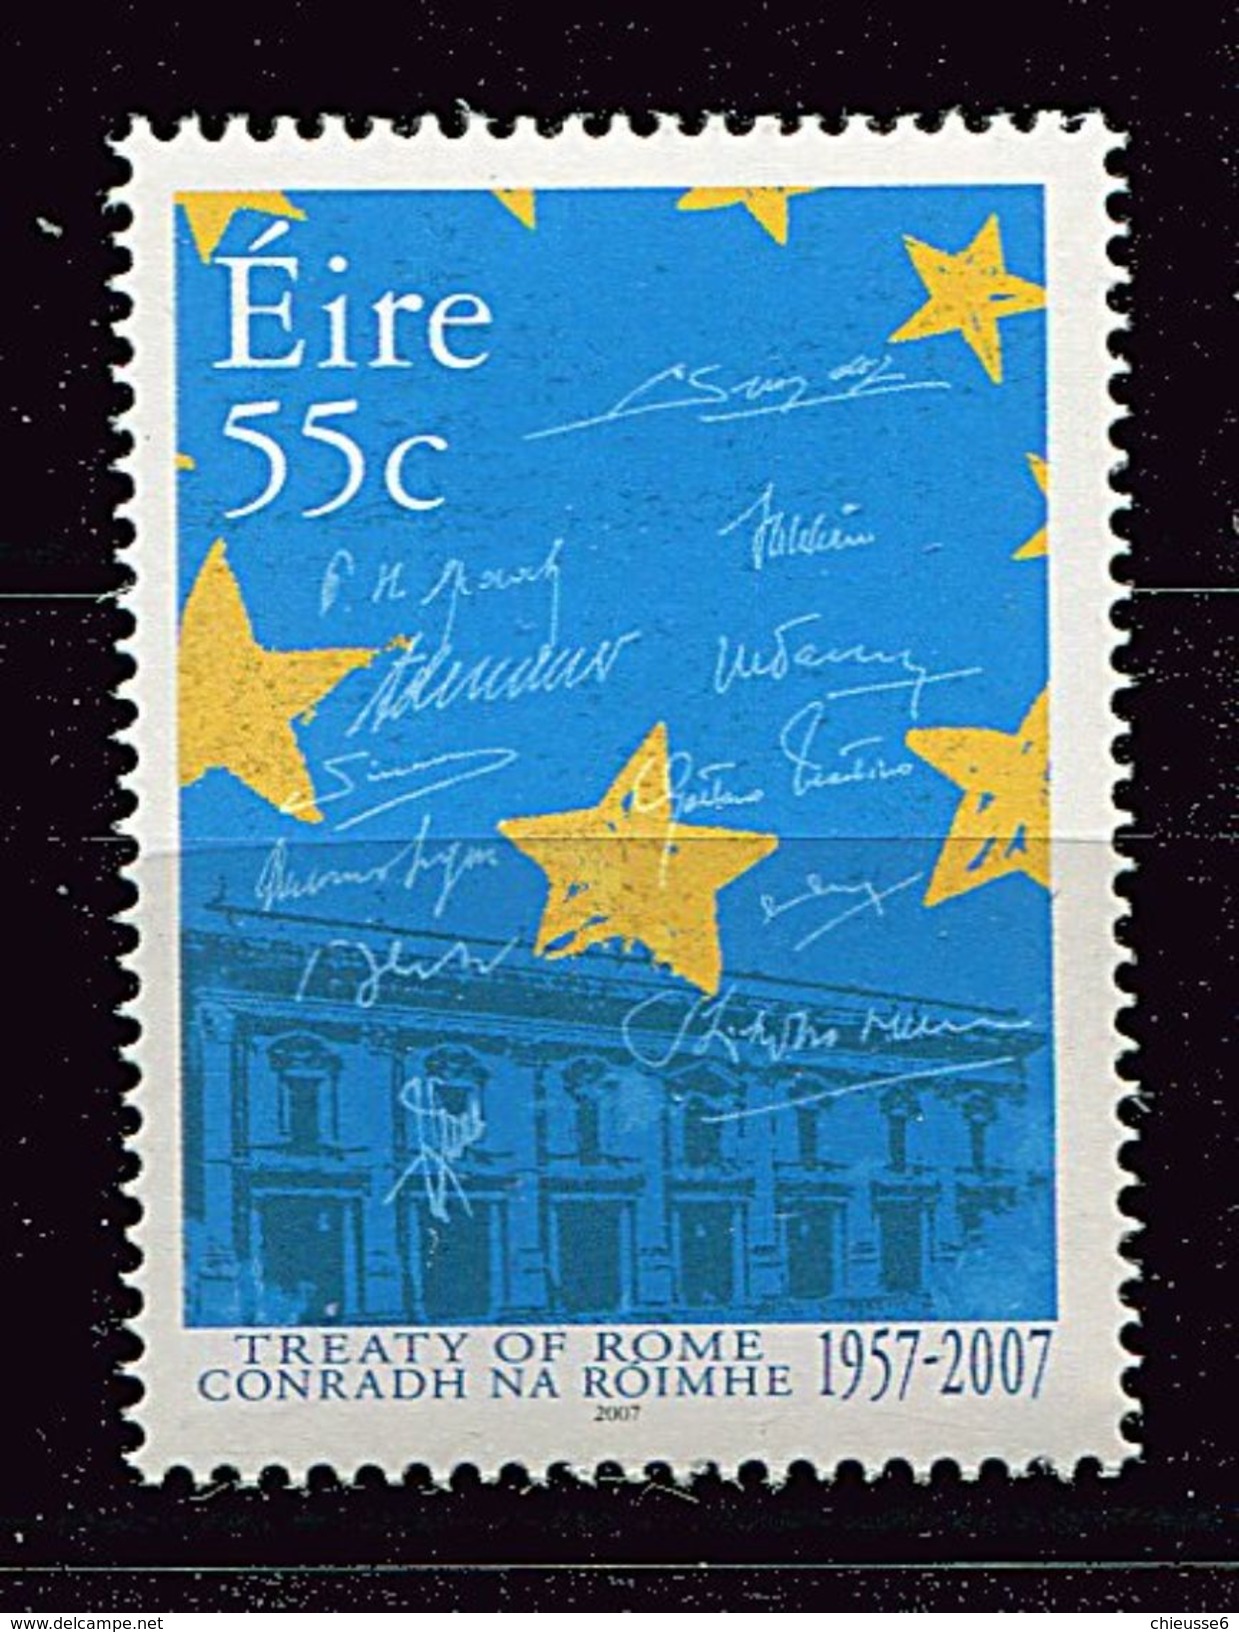 Lot 239 - B 19 - Irlande** N° 1762 - Cinquant. Du Traité De Rome -  Année 2007 - 2007